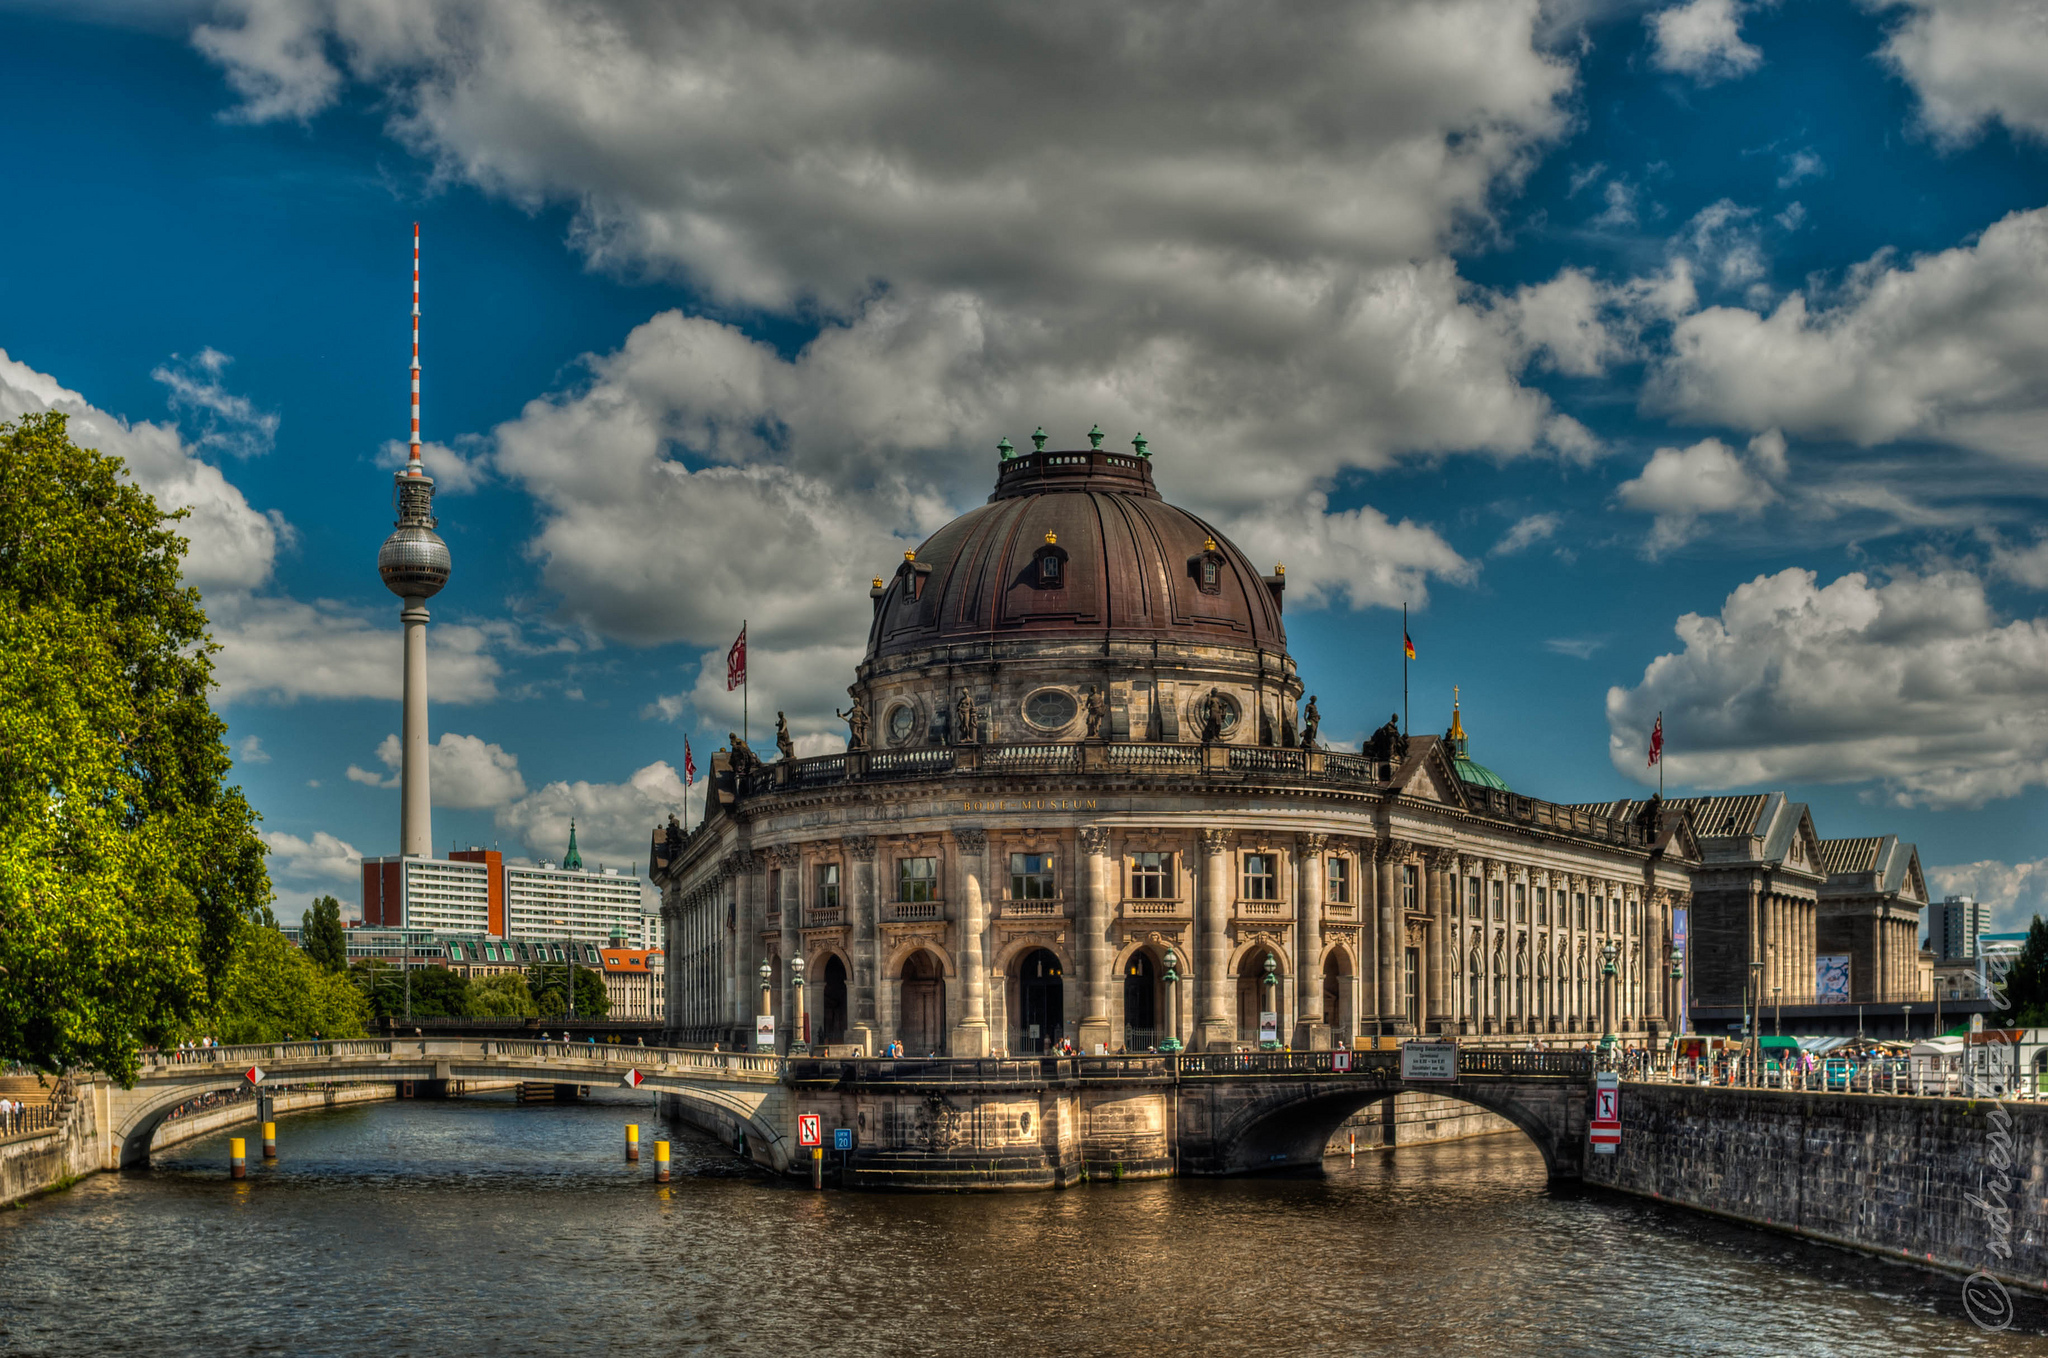 Следующая точка маршрута "Берлин за один день" - Музейный остров.